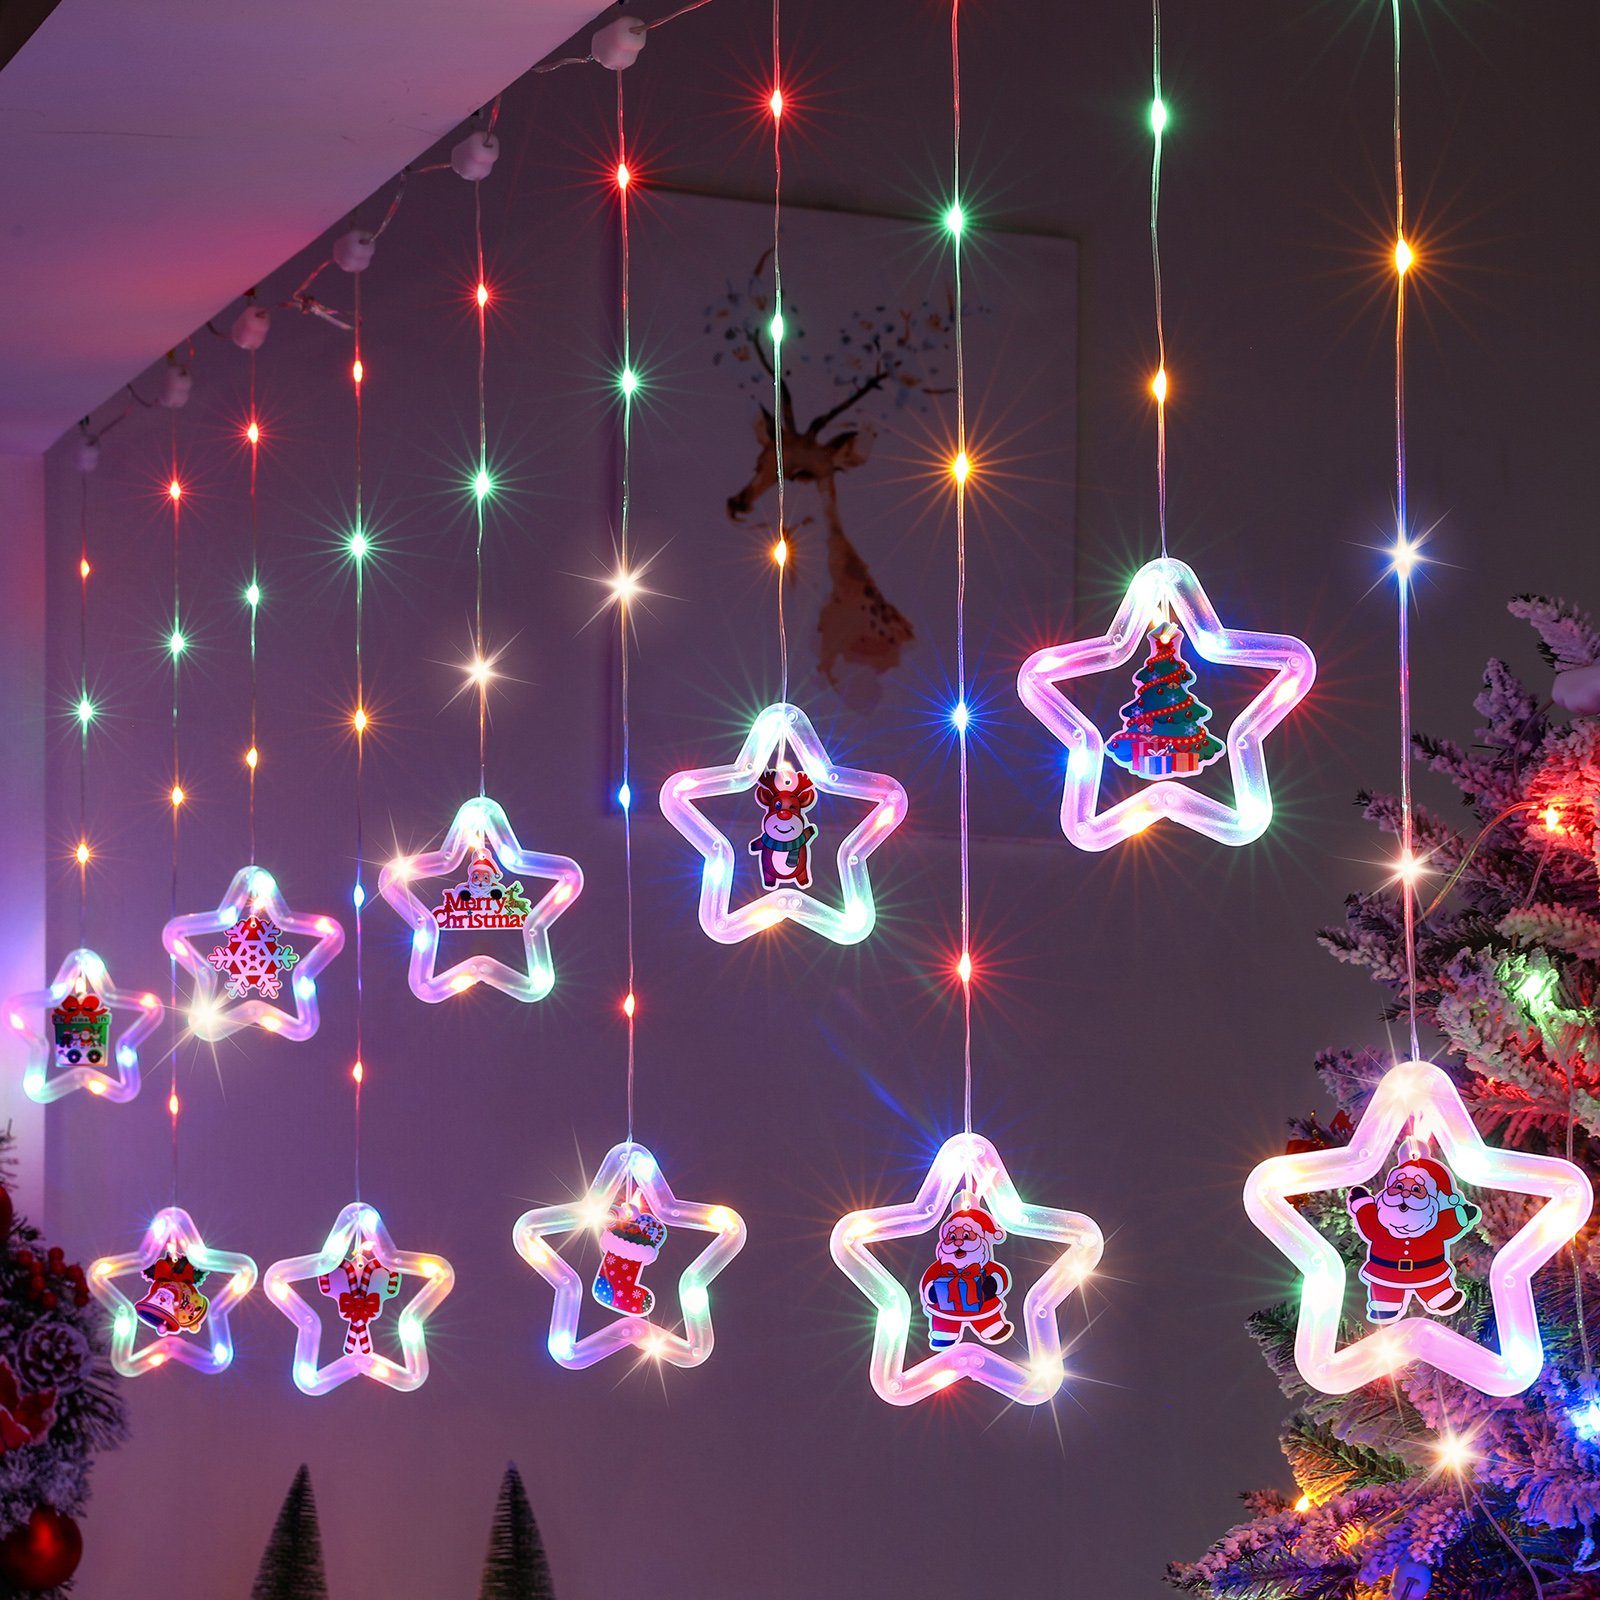 LED Fensterbeleuchtung Lichterkette Party Garten Modi Deko, Mehrfarbig LED 3M Fernsteuerung, Weihnachten mit LED-Lichtervorhang Timer, Warmweiß/RGB, Batterien/USB Sunicol mit 8